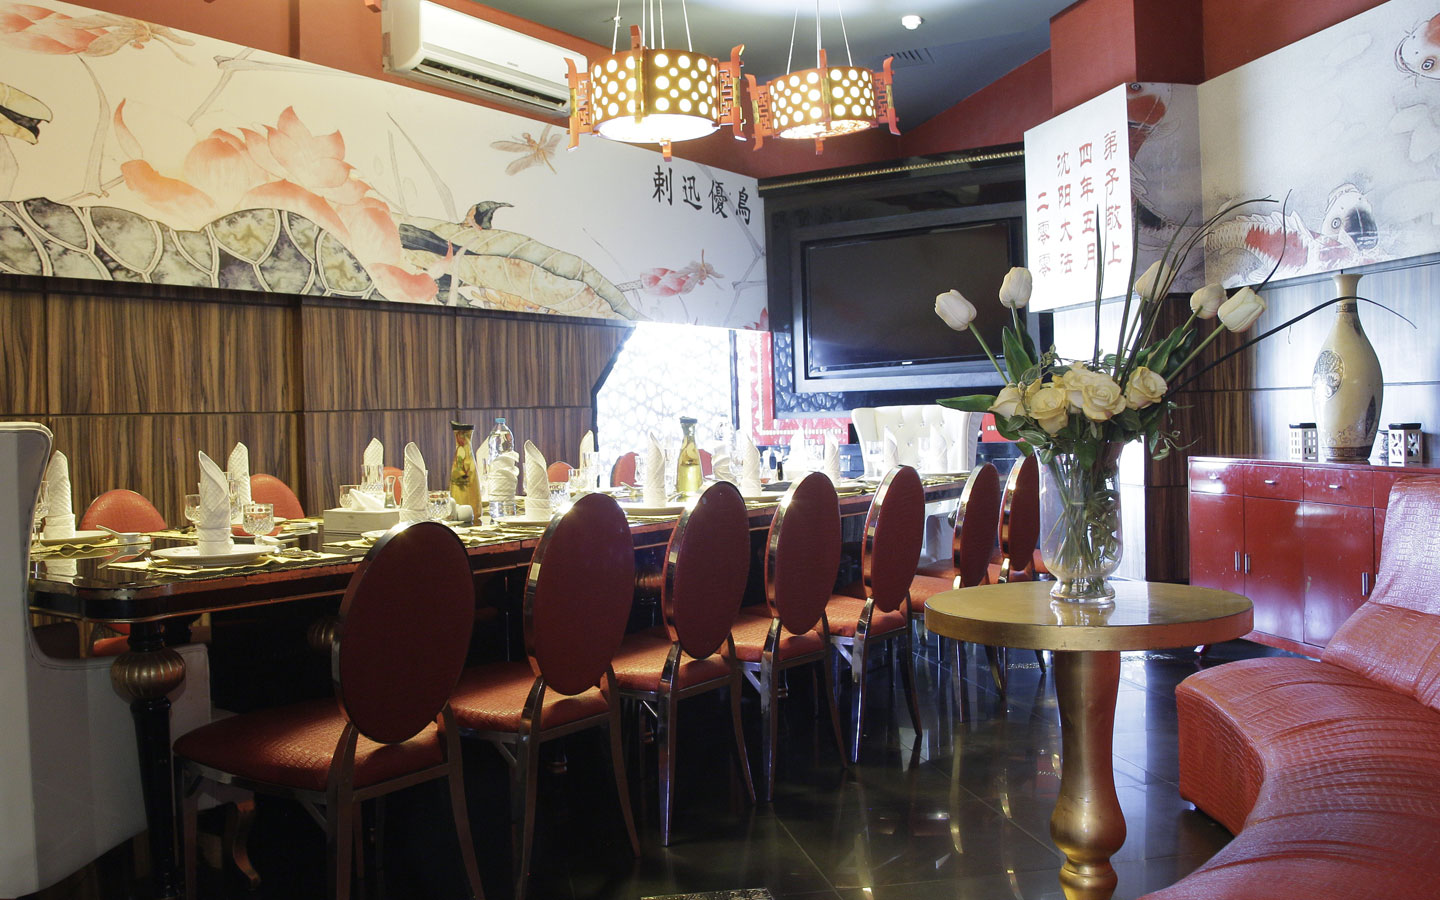 shingyang interior